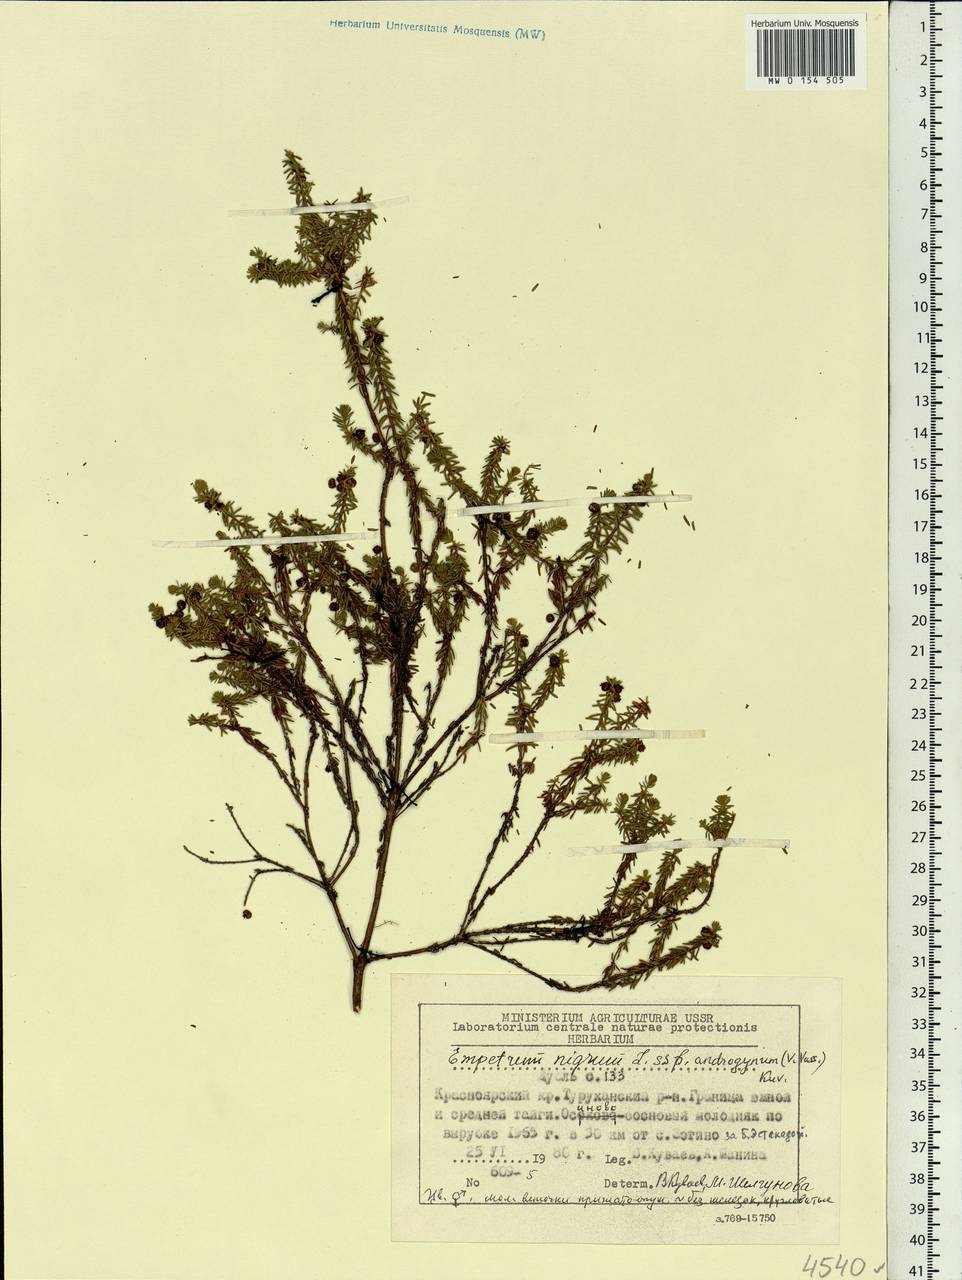 Empetrum nigrum subsp. androgynum (V. N. Vassil.) Kuvaev, Siberia, Central Siberia (S3) (Russia)